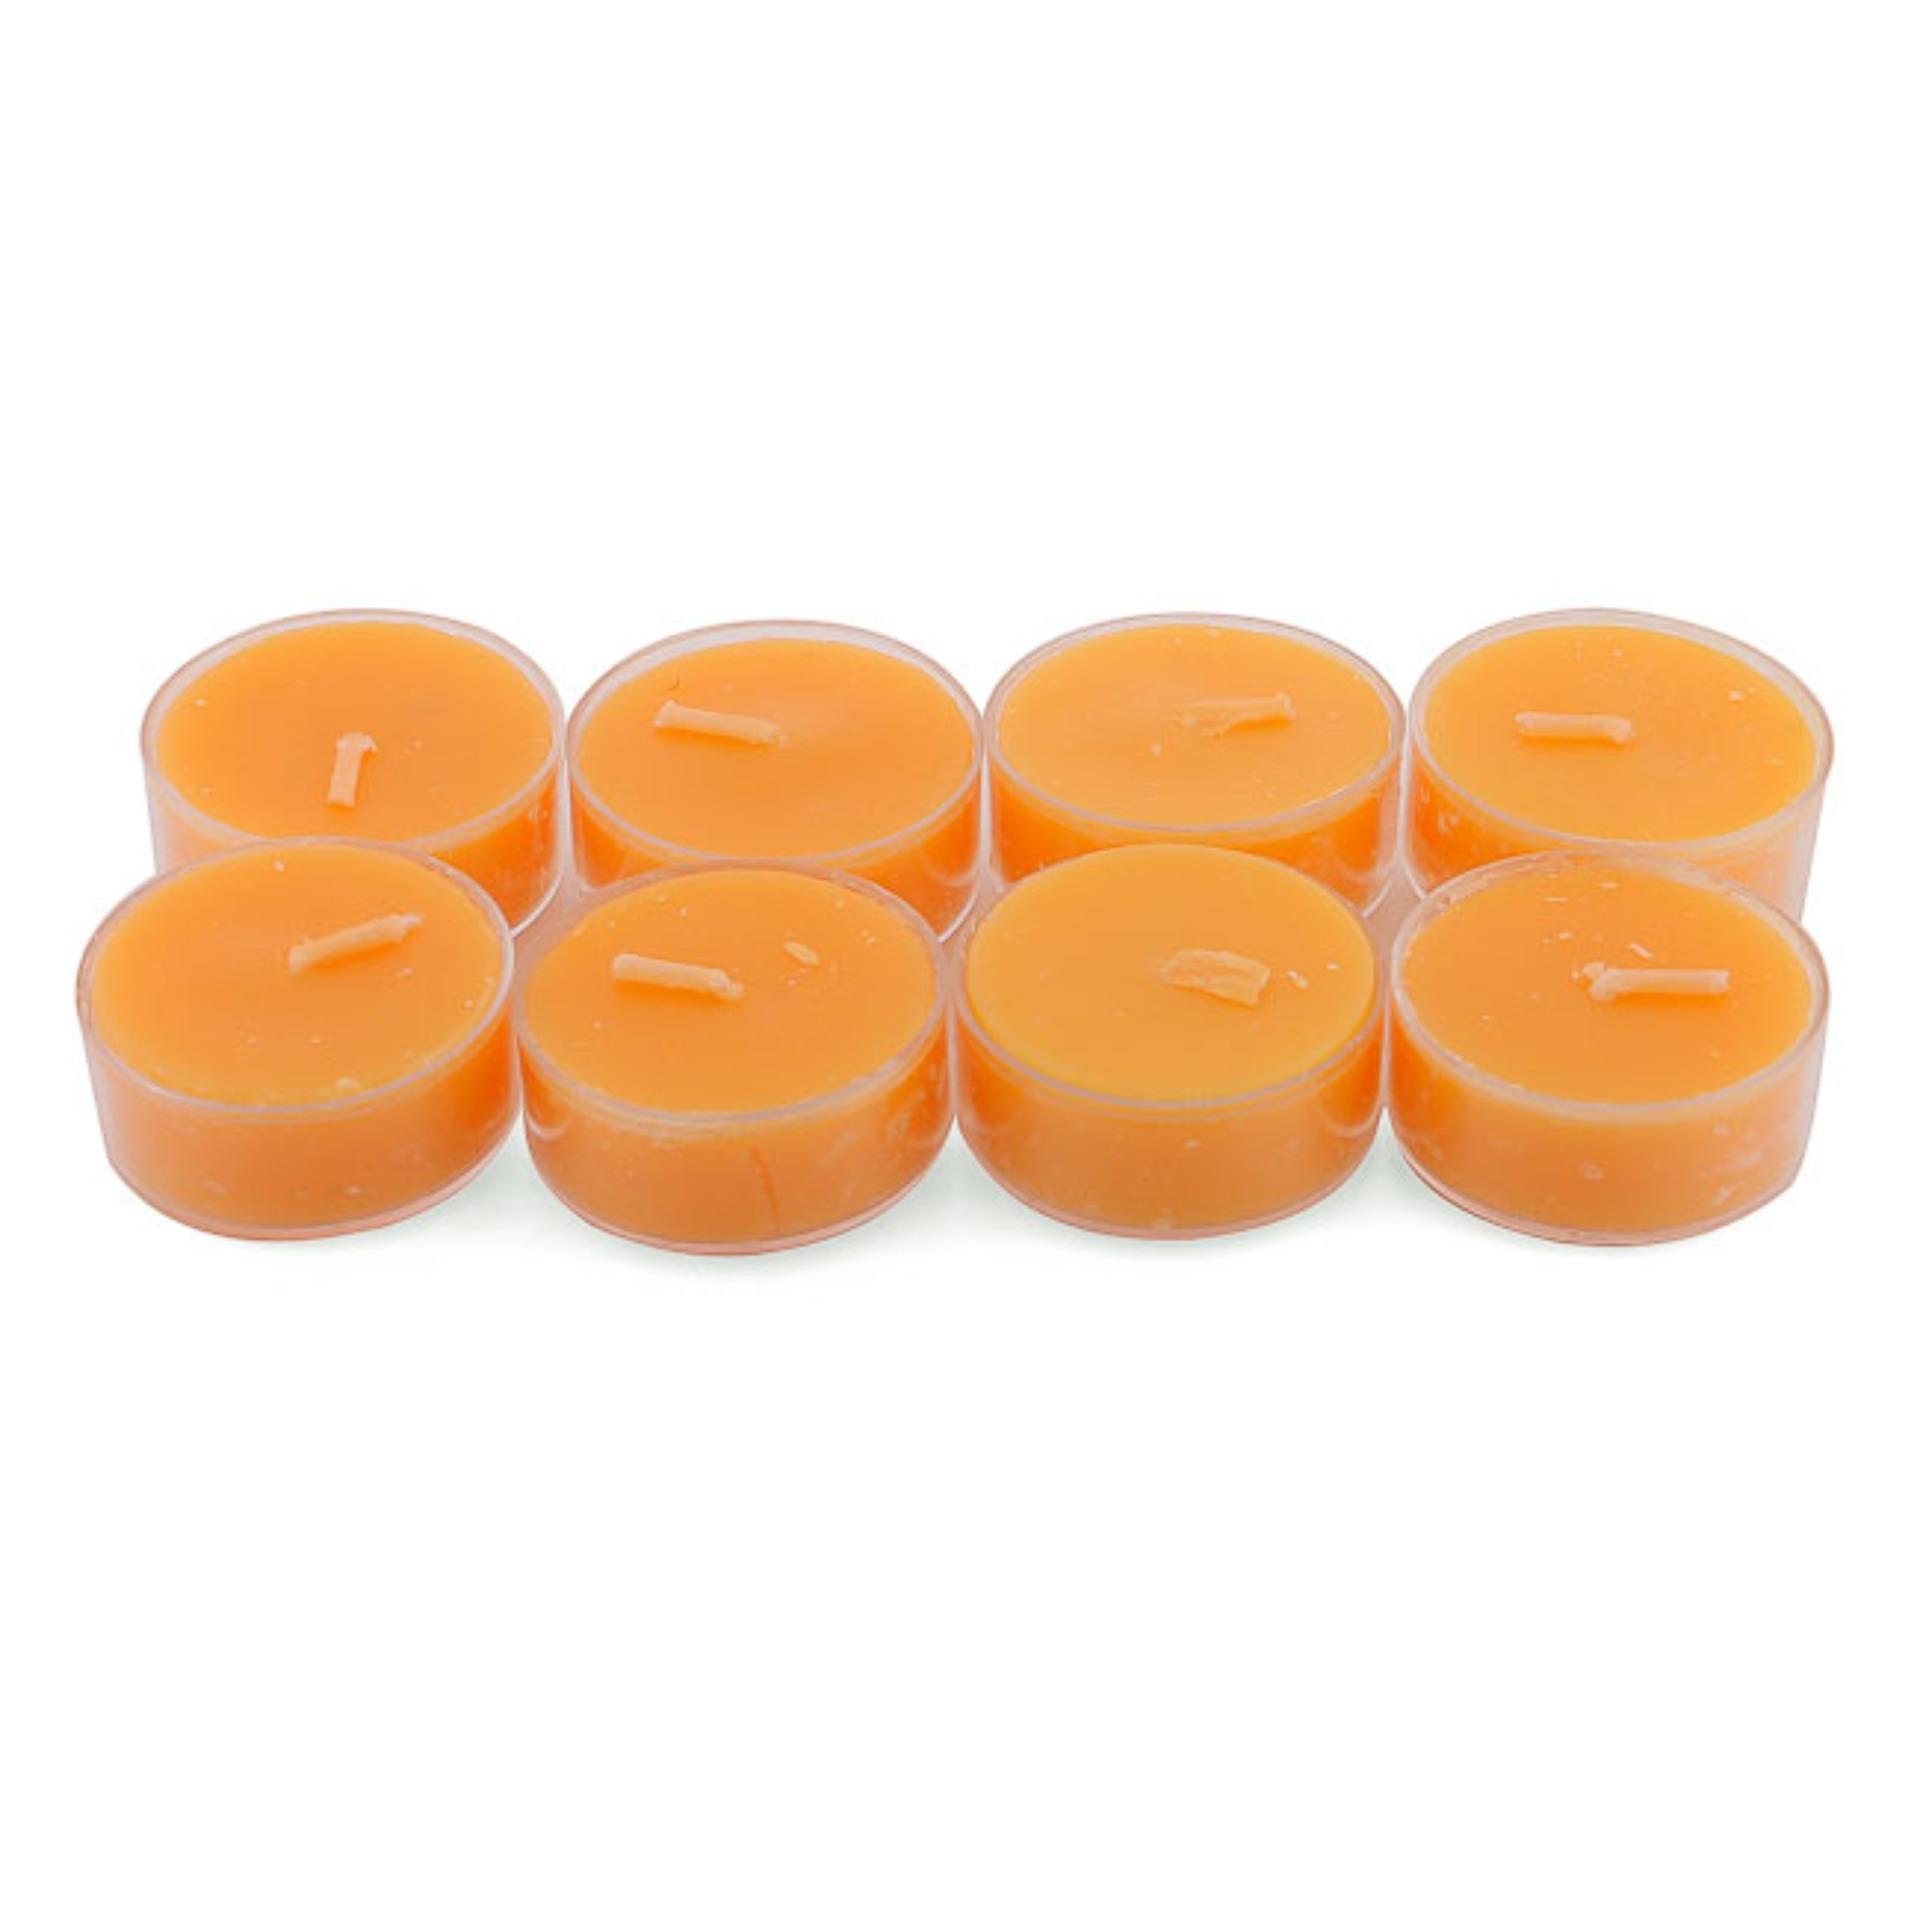 Bộ 6 hộp nến tealight thơm đế nhựa (8 nến/hộp) NQM FtraMart (Cam)